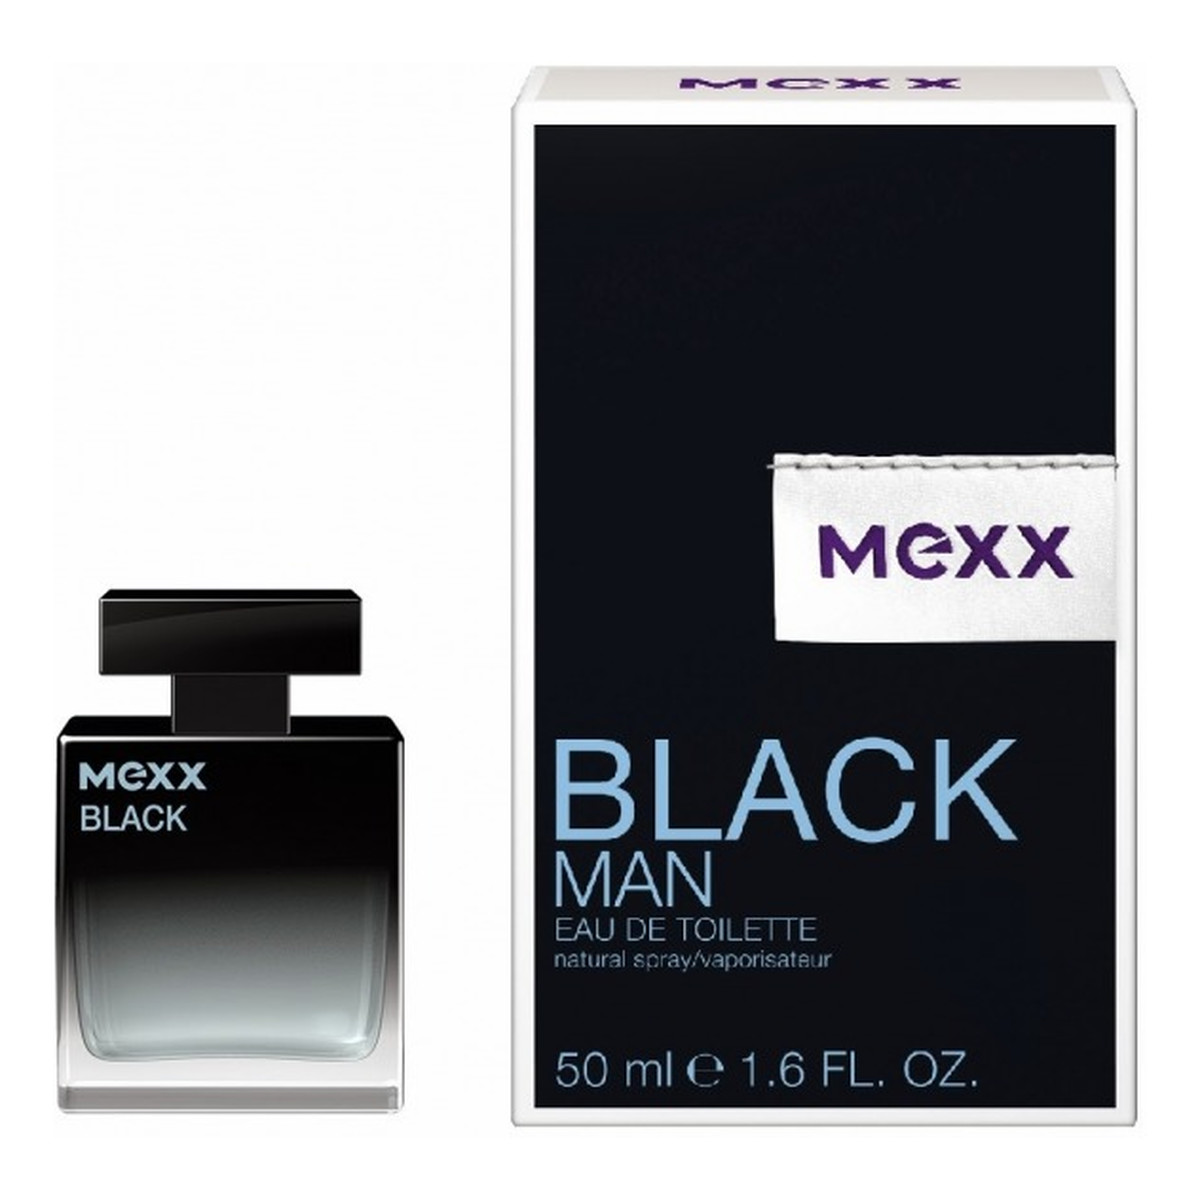 Mexx BLACK MAN WODA TOALETOWA DLA MĘŻCZYZN 50ml